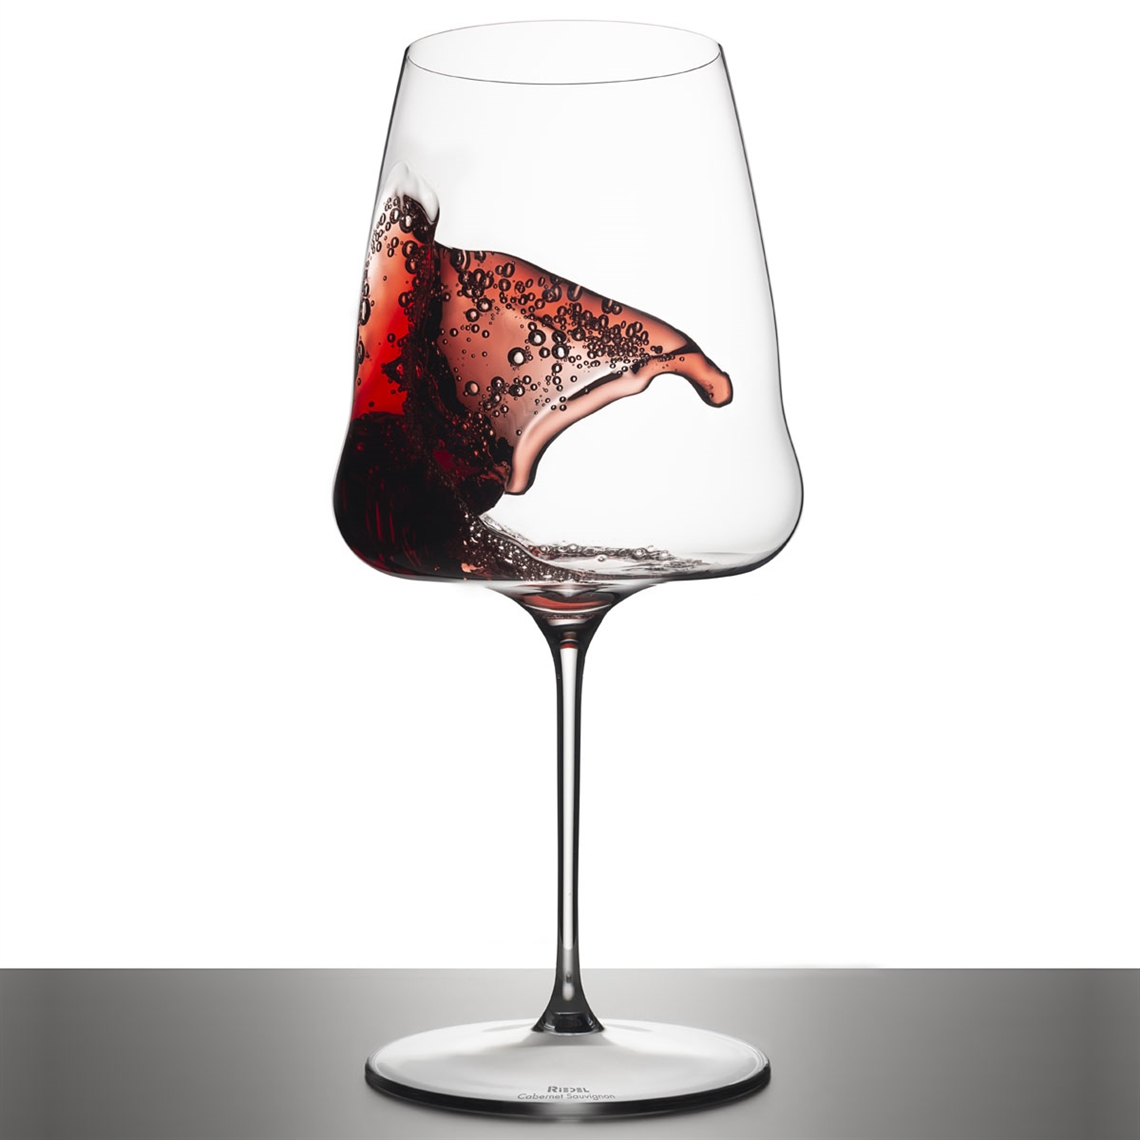 Riedel Winewings Cabernet / Merlot Glass - 1234/0